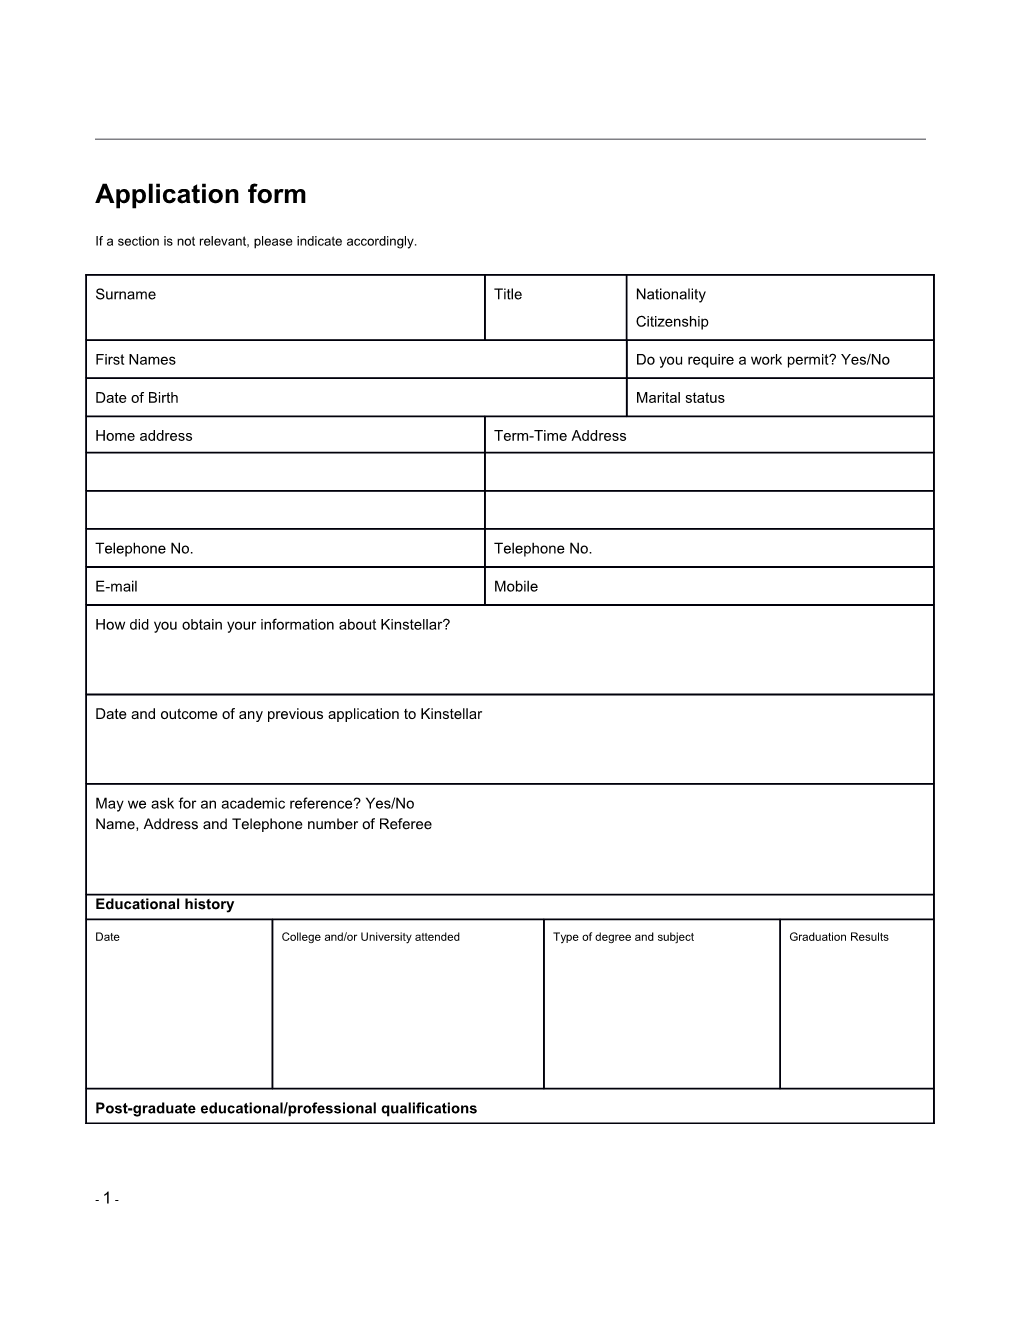 Kinstellar Application Form K6296818